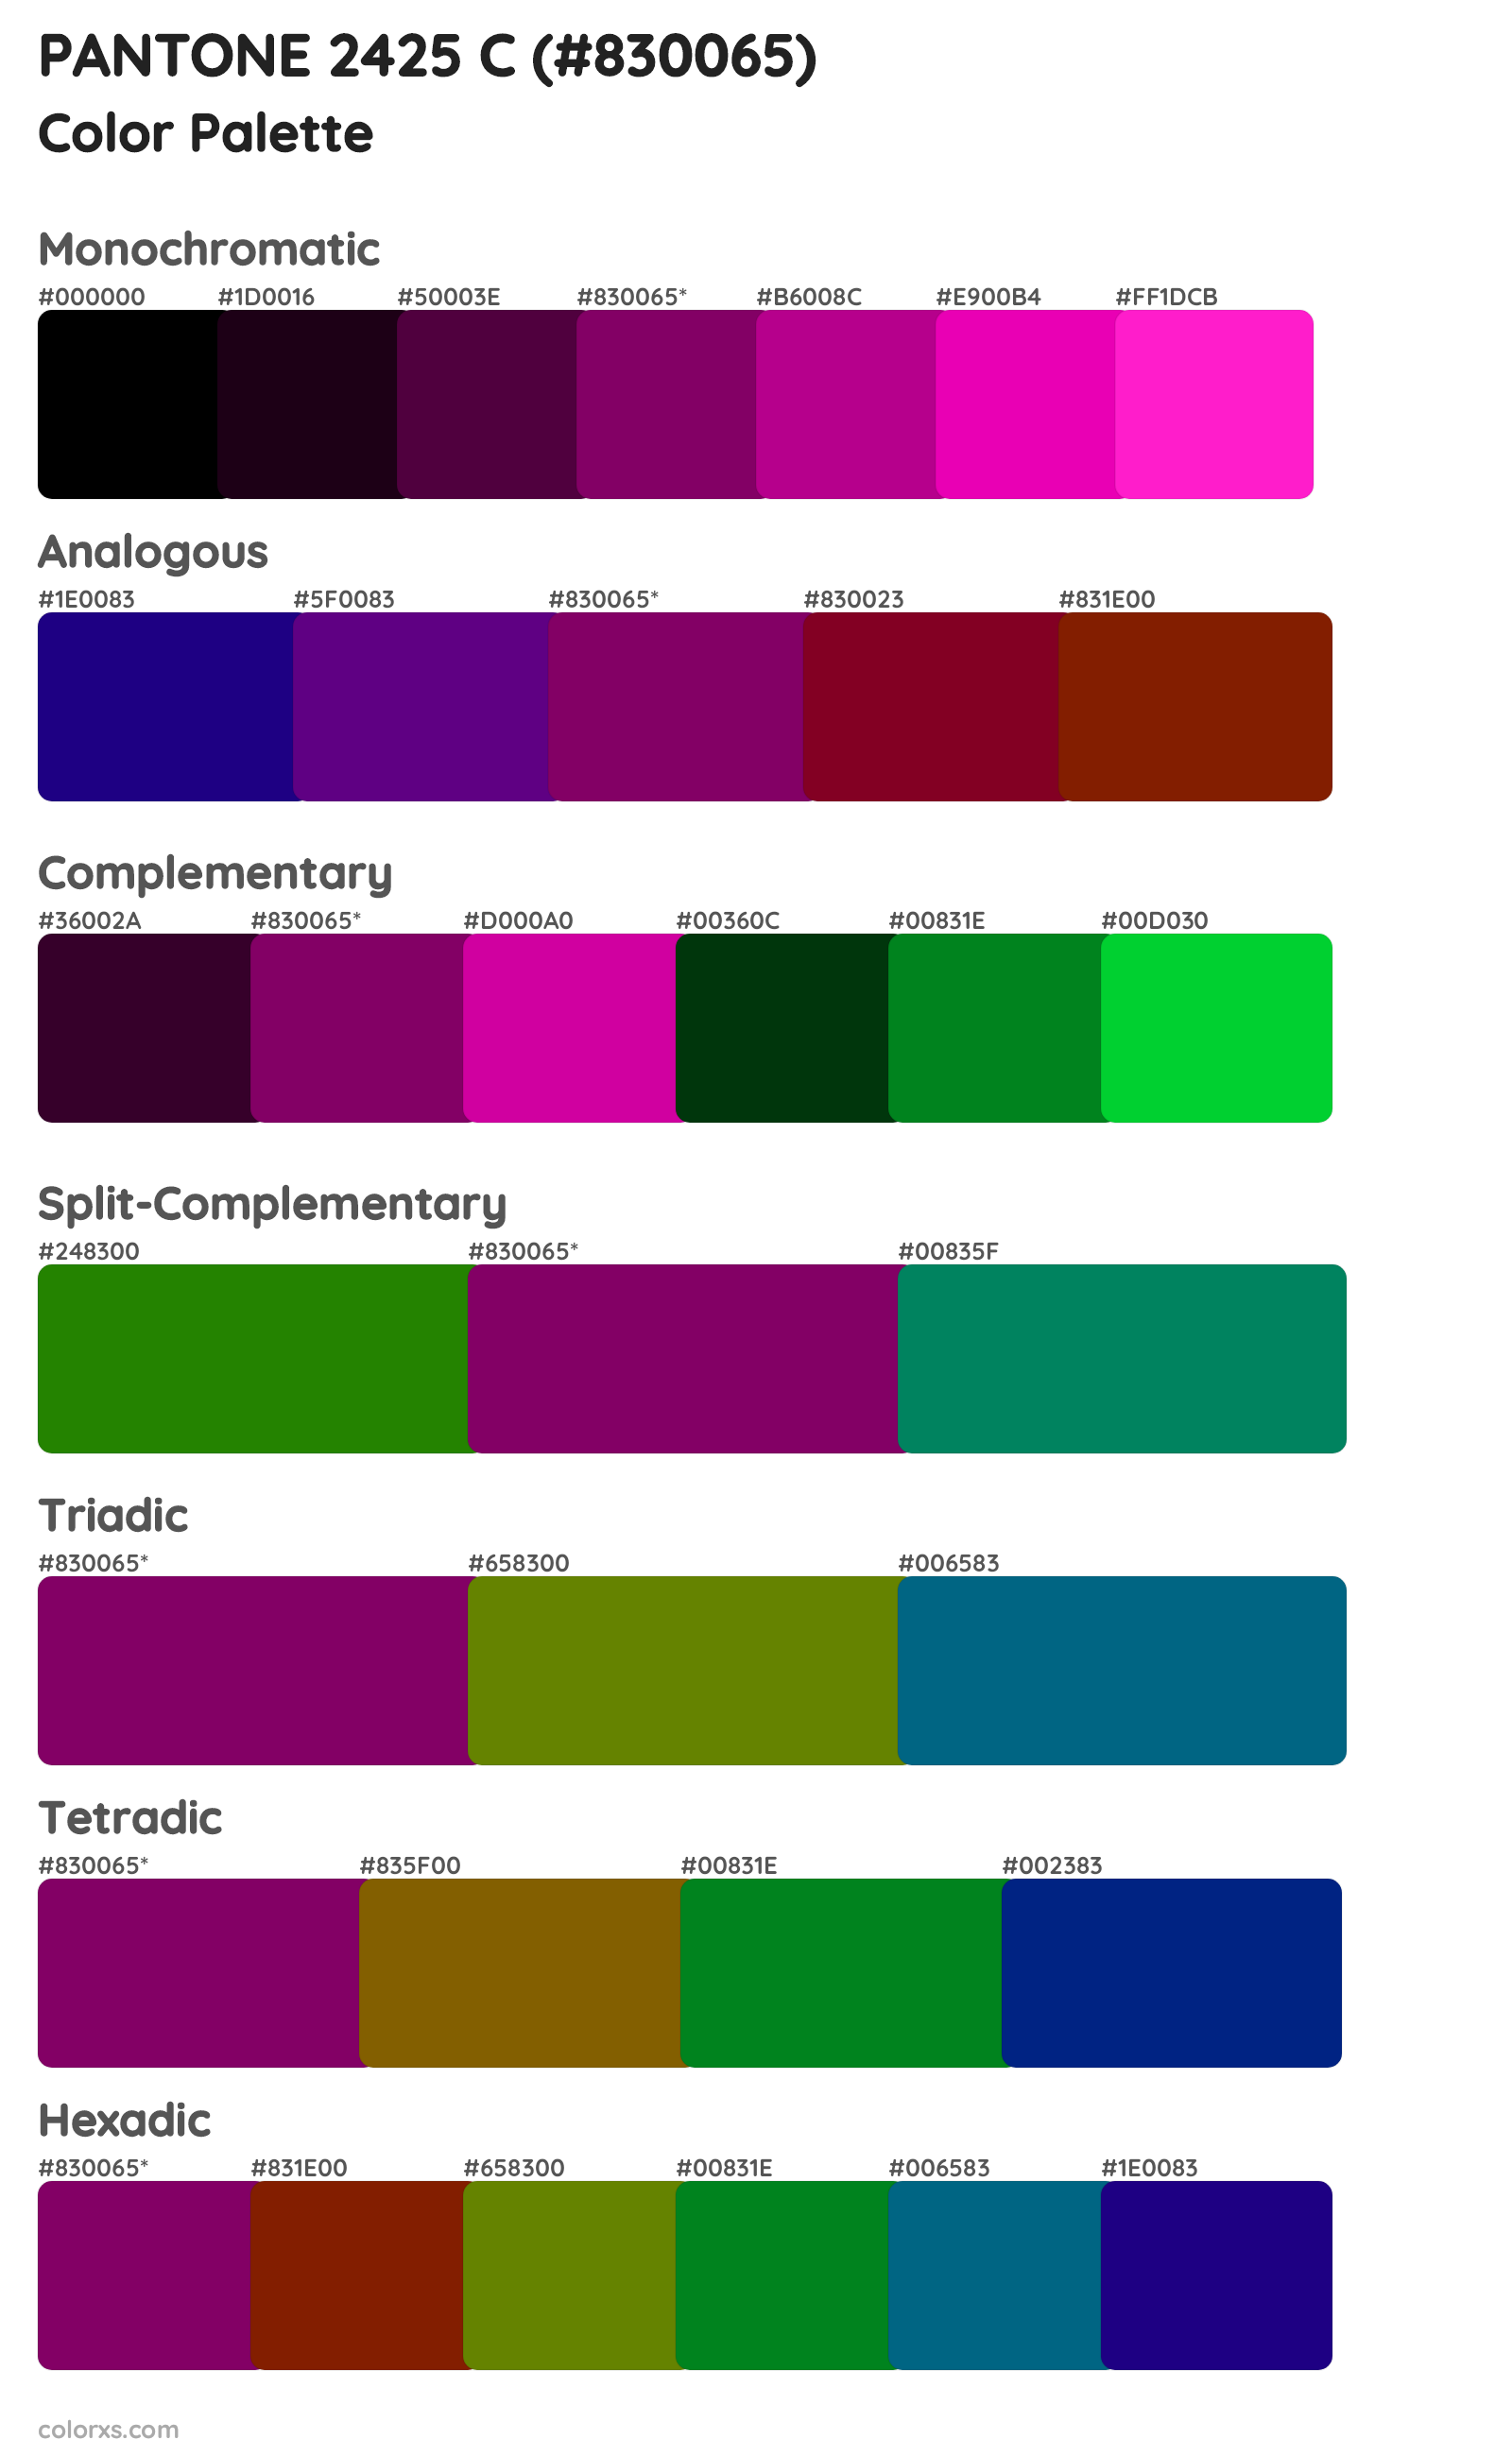 PANTONE 2425 C Color Scheme Palettes